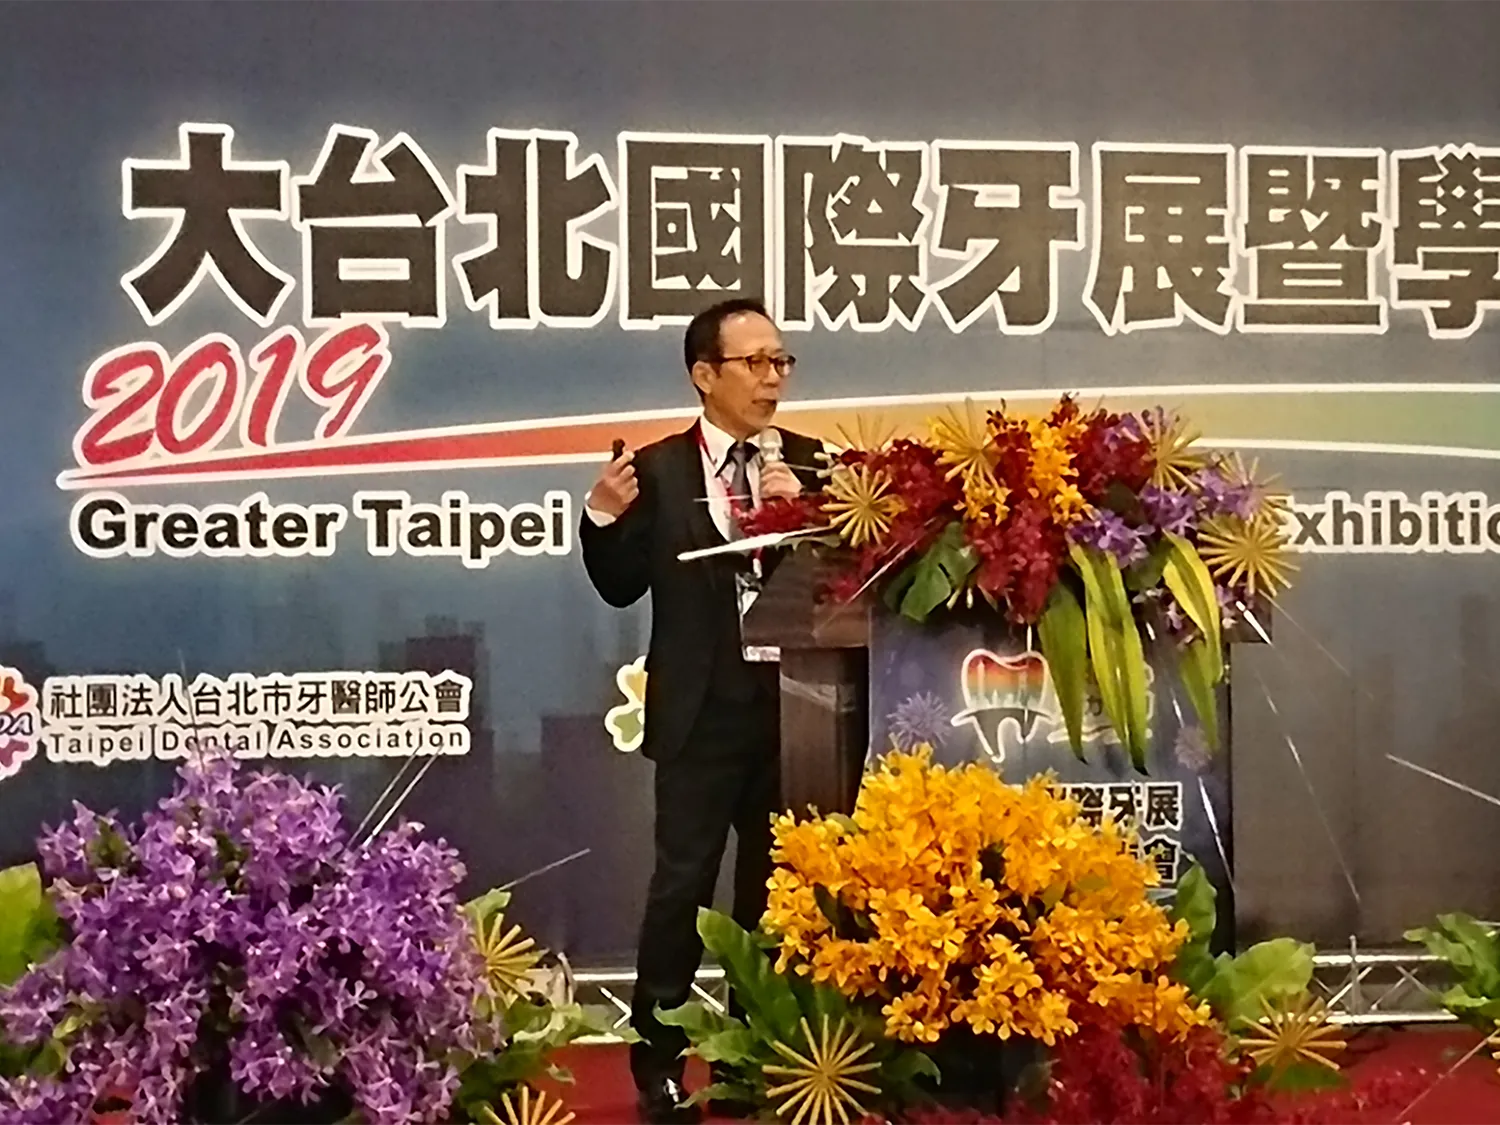 大台北国際歯科学会発表